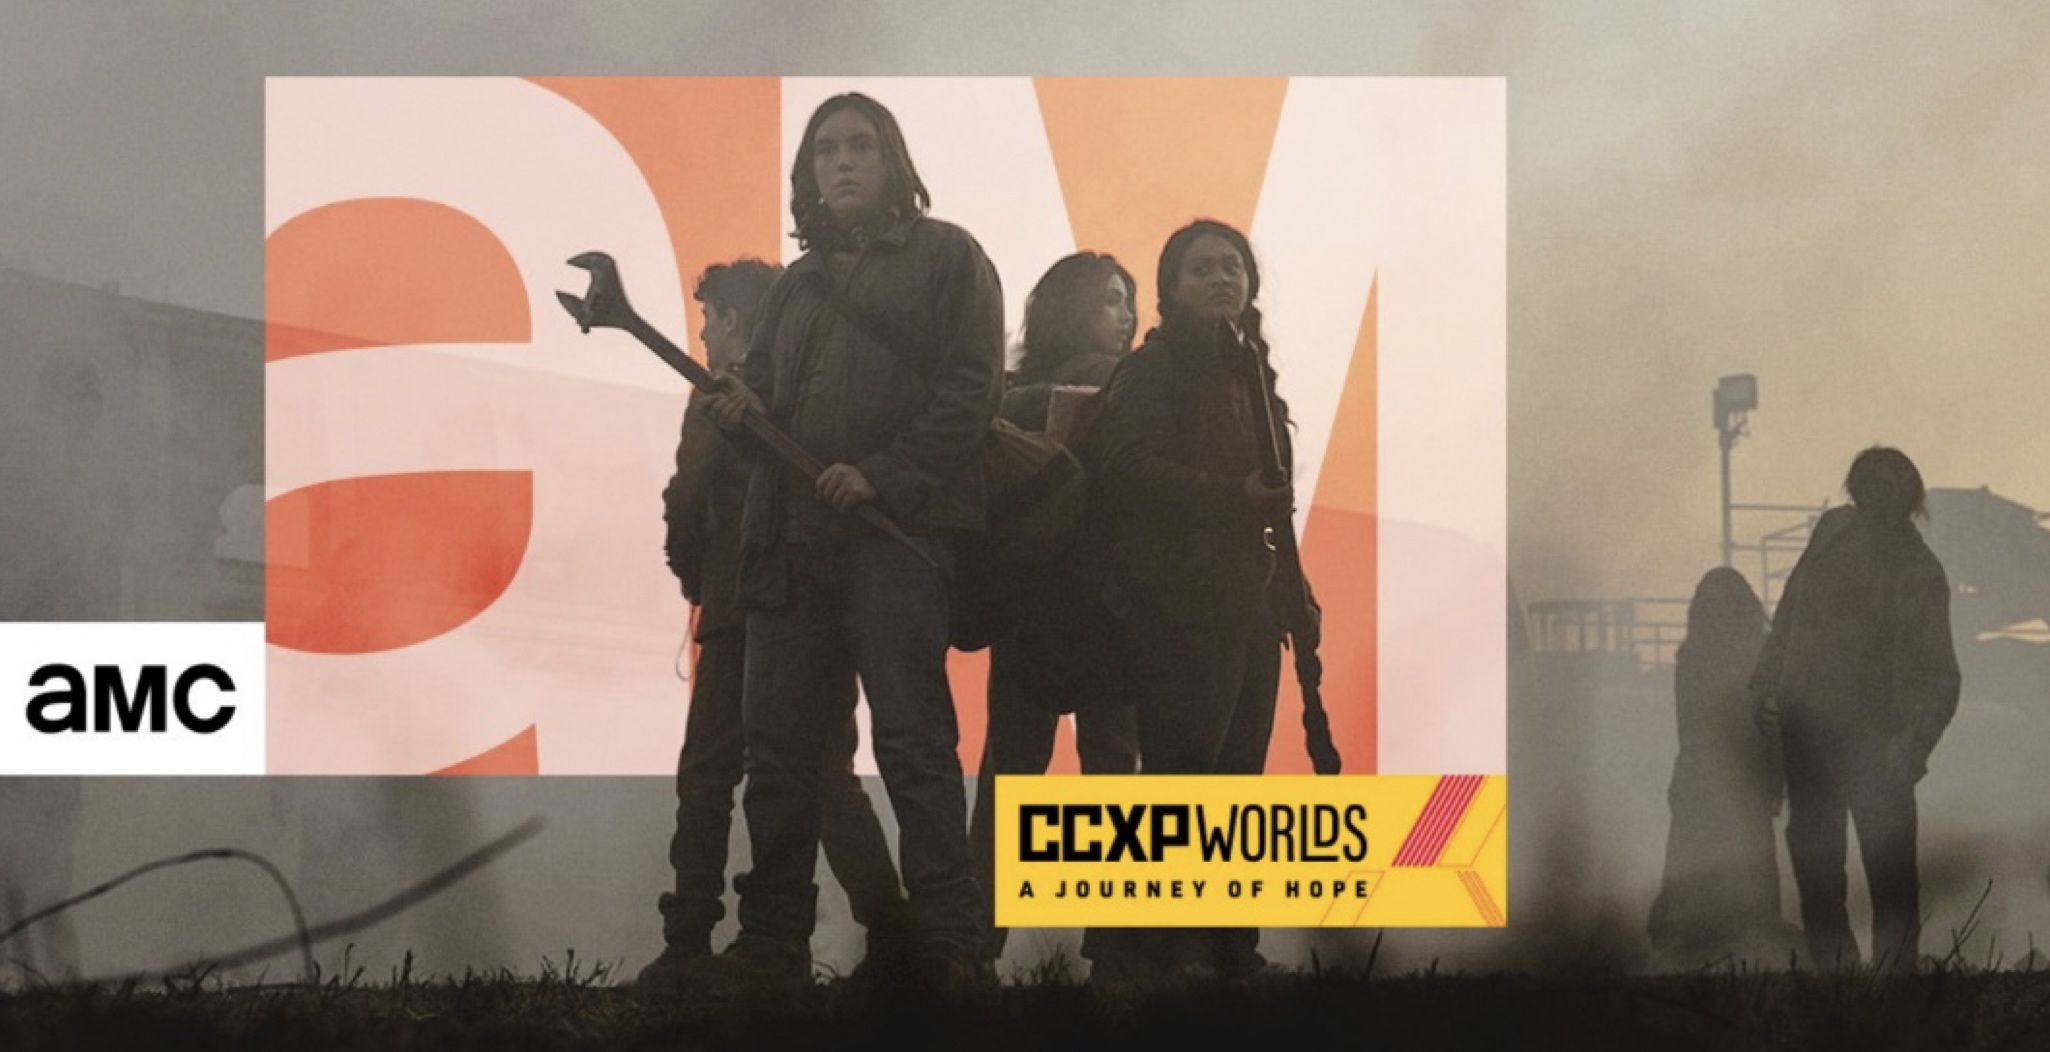 En el 2020, AMC participará en la edición virtual de CCXP titulada Worlds. Esta edición del festival de cultura pop más grande del mundo.